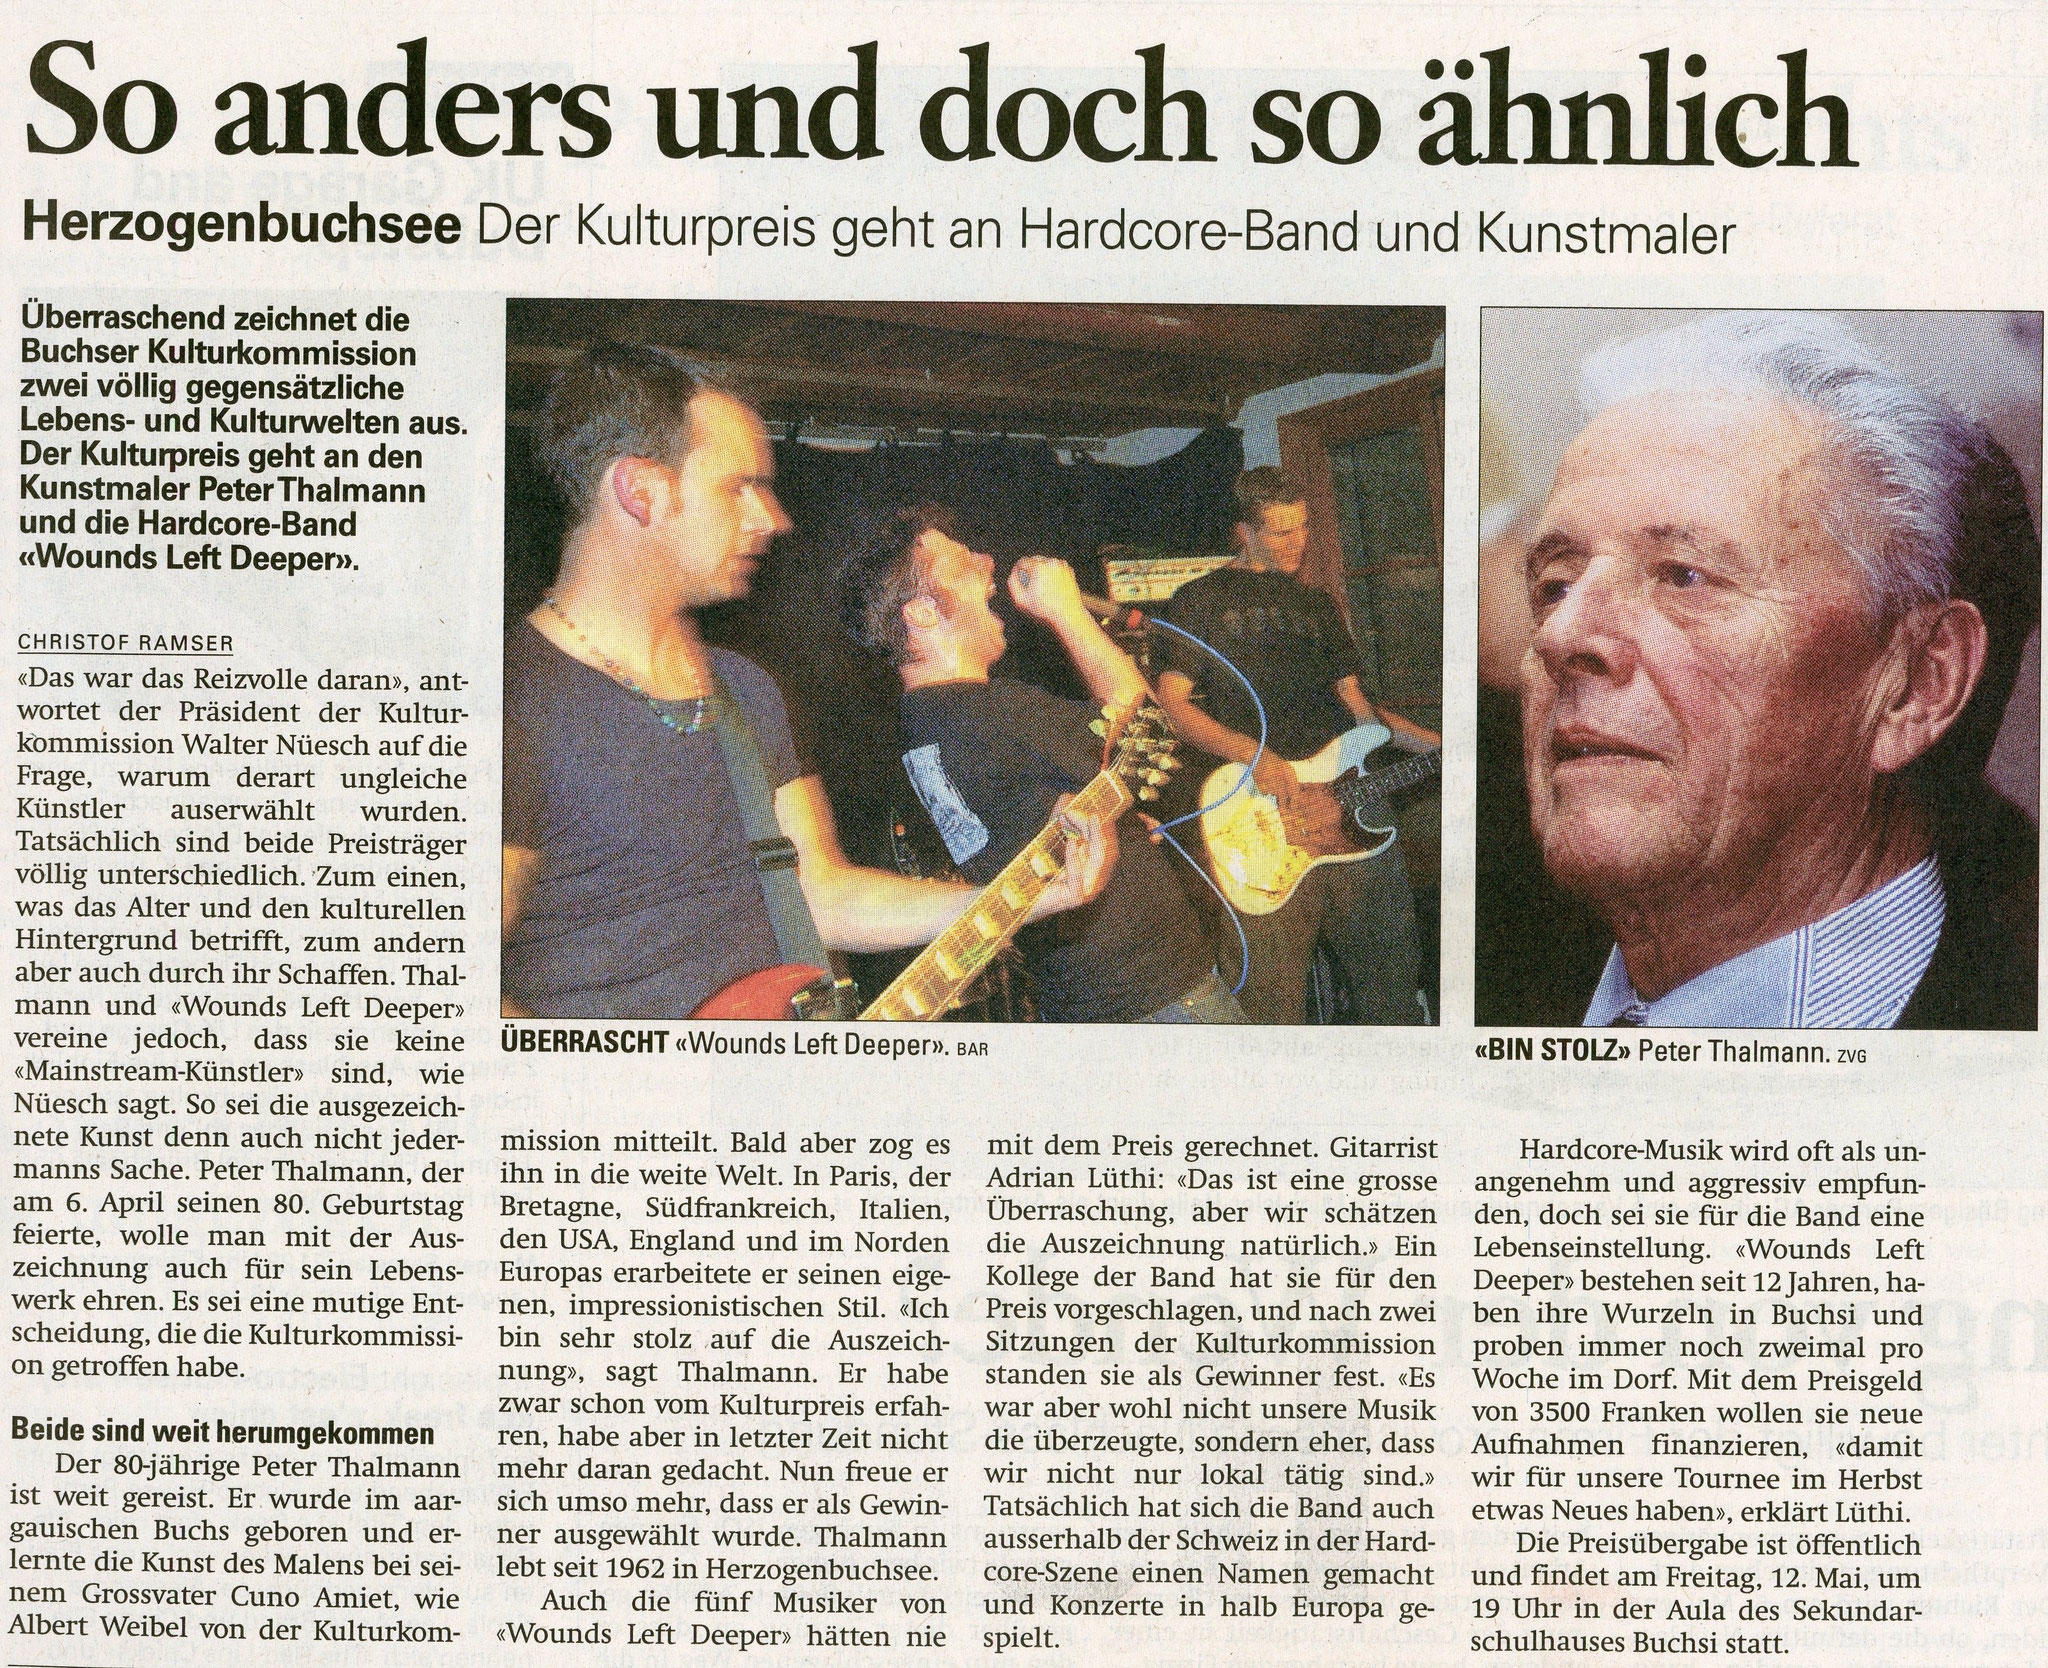 2006, Kulturpreis: Zeitungsbericht